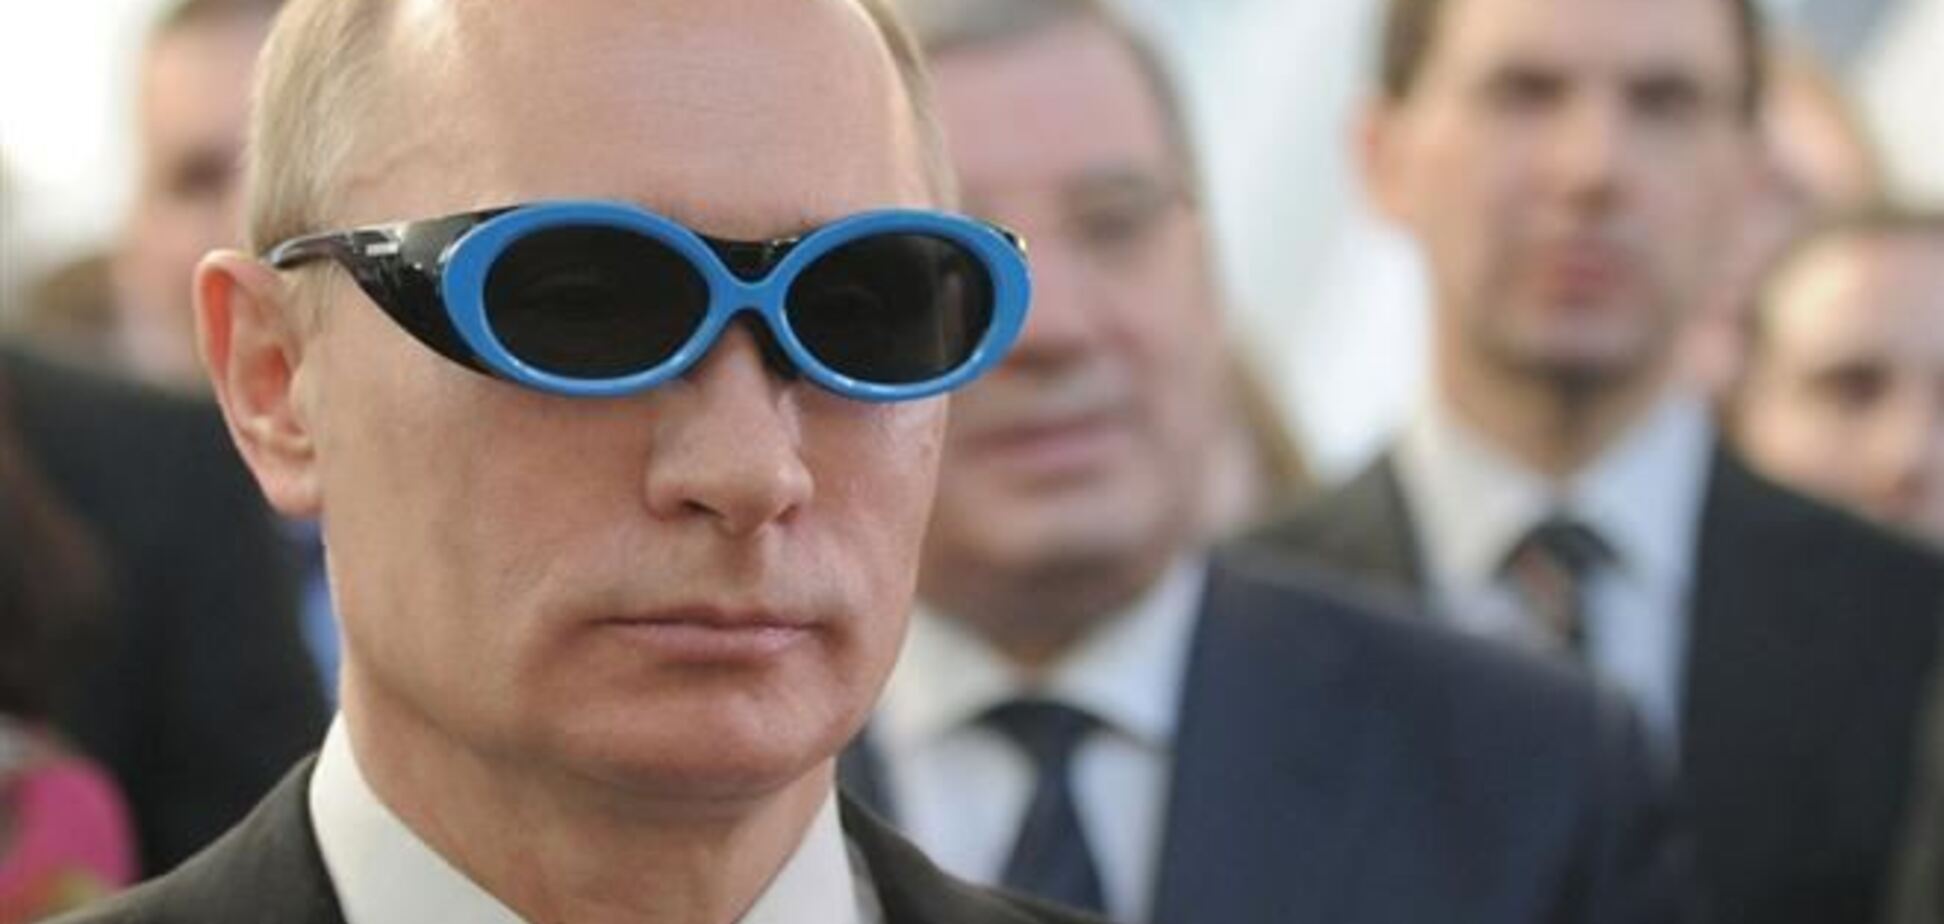 Журнал The Economist висміяв Путіна і його 'новий світовий порядок'